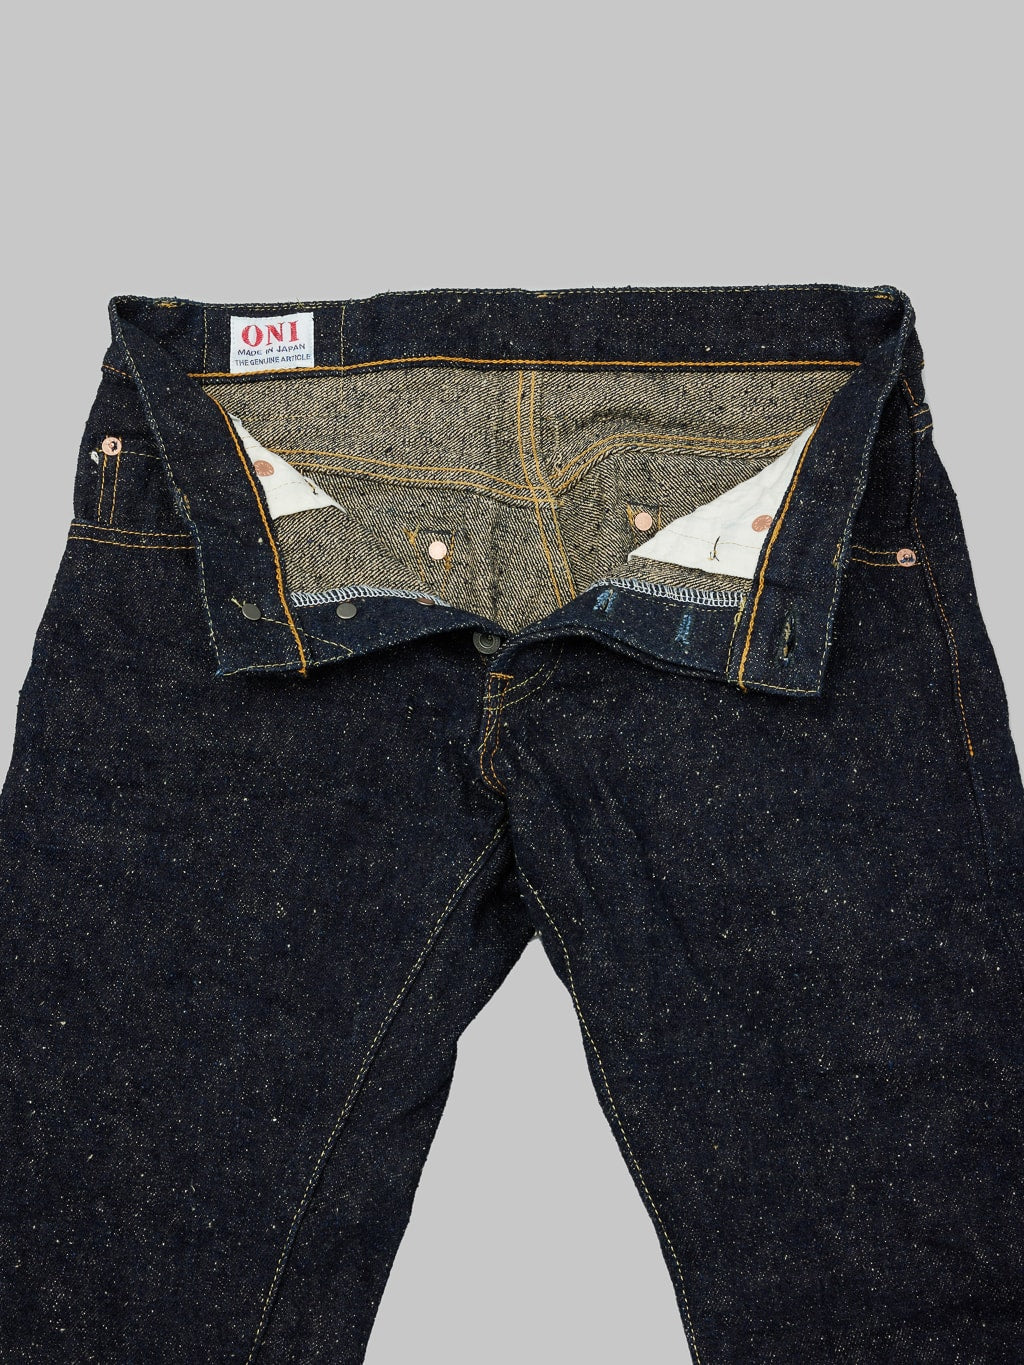 ONI Denim 288 Asphalt 20oz Regular Straight Jeans interior fabric